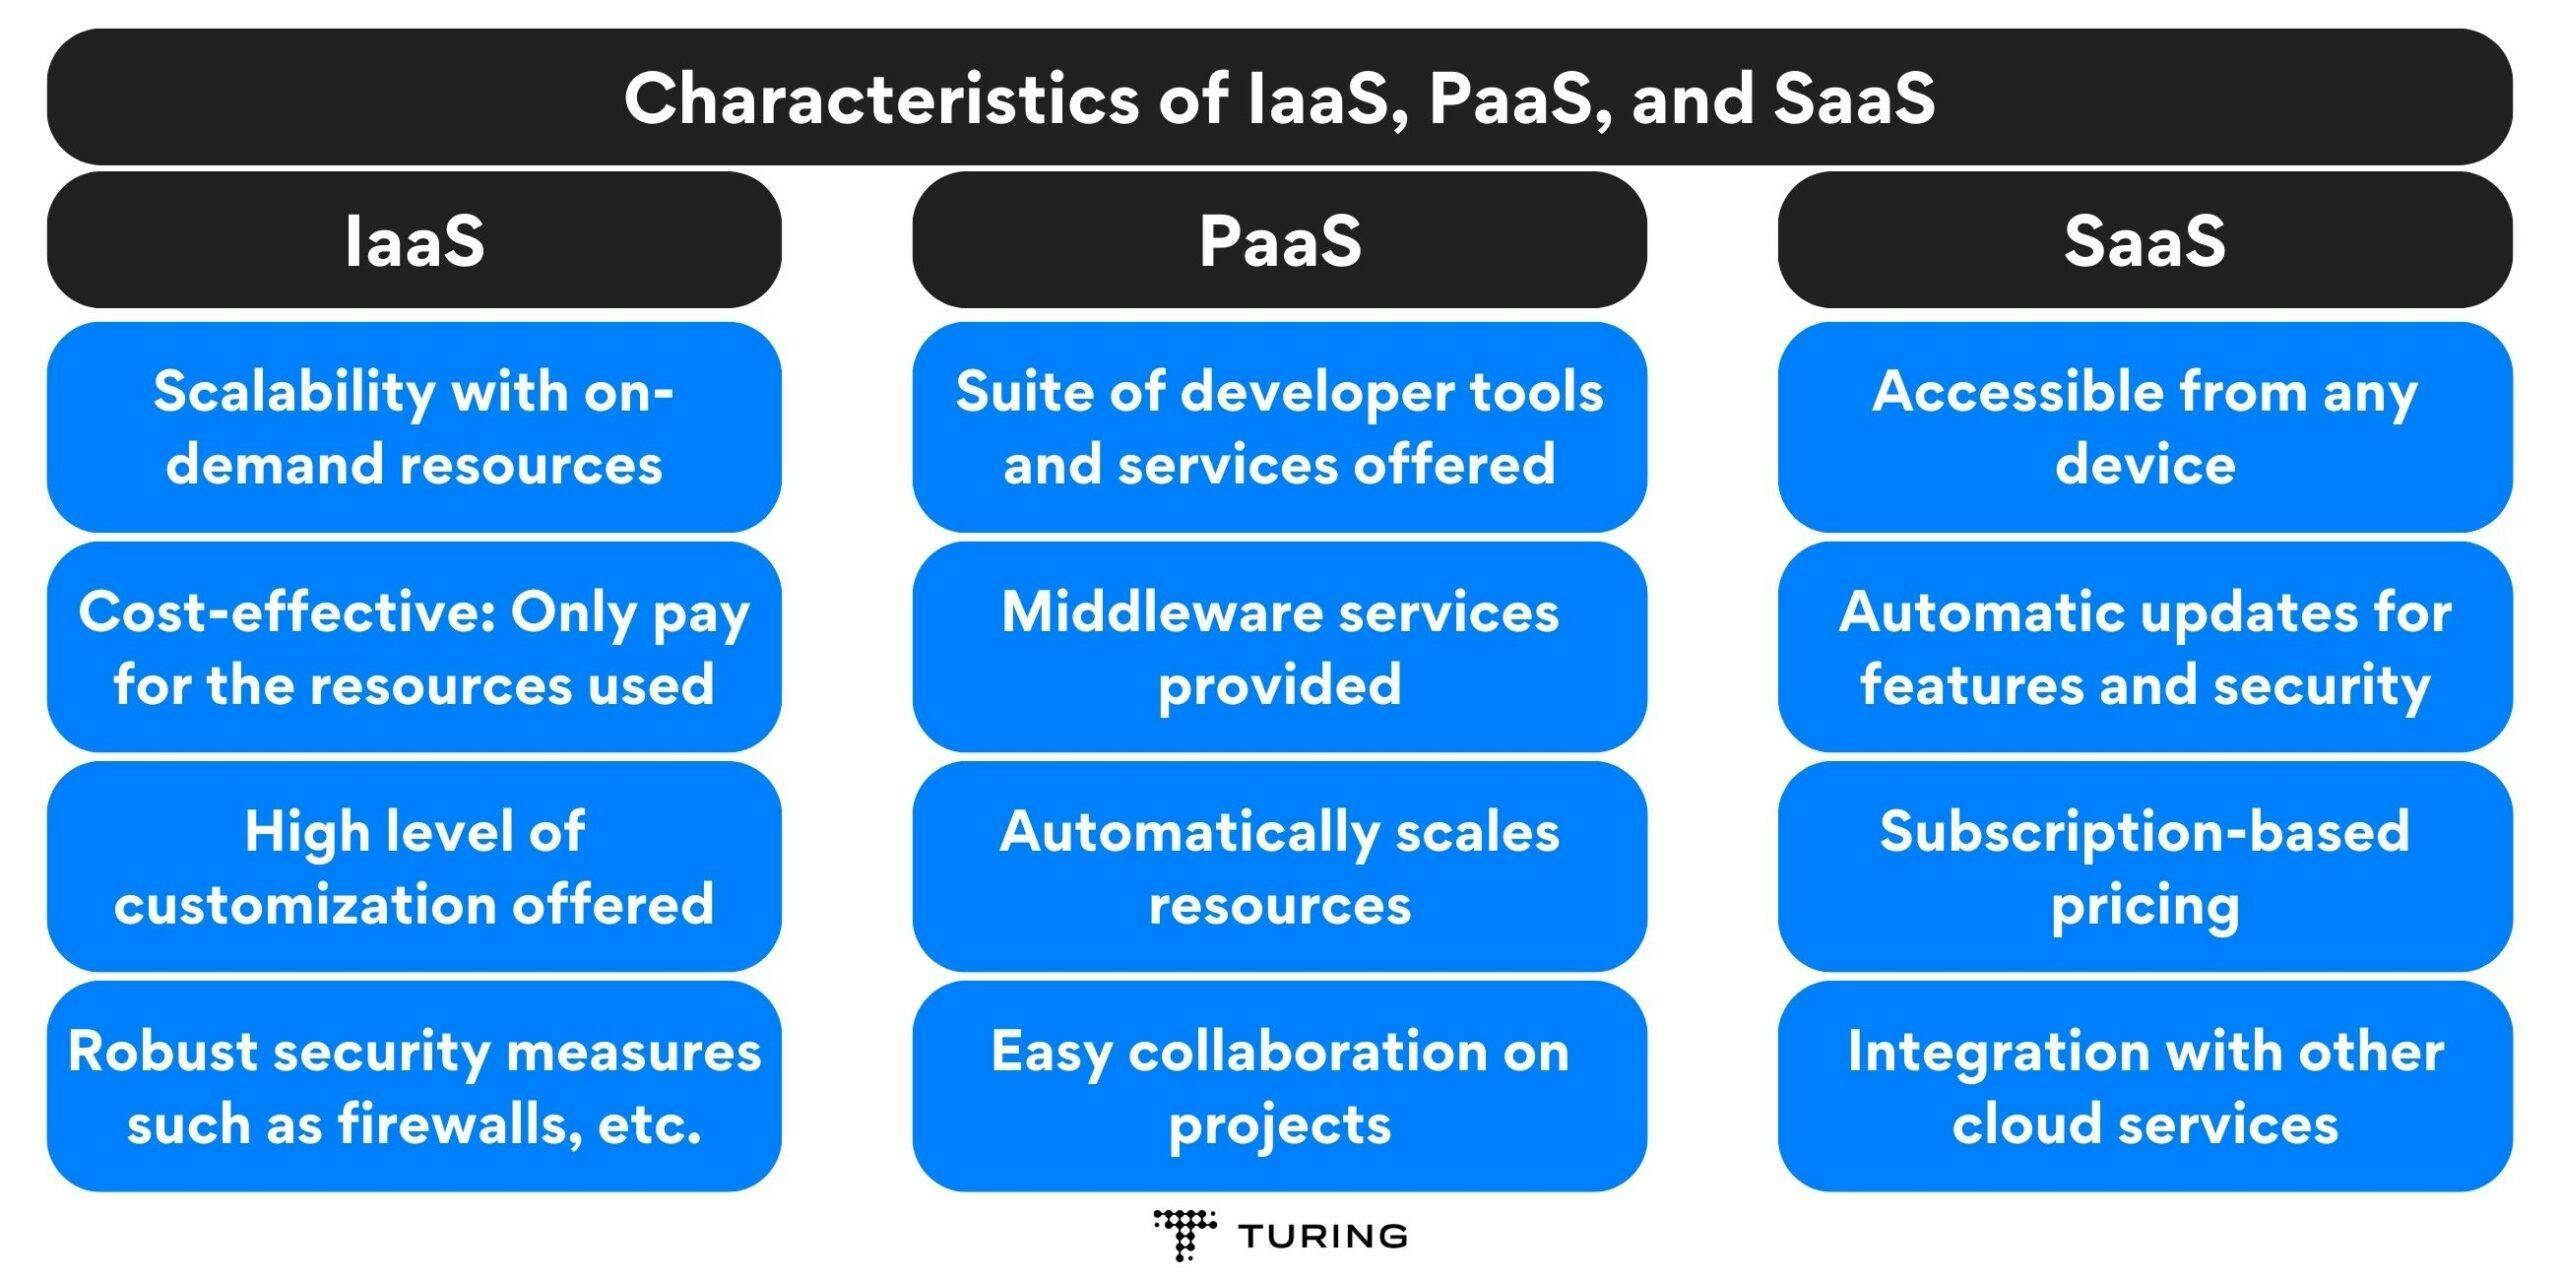 Characteristics of IaaS, PaaS, and SaaS